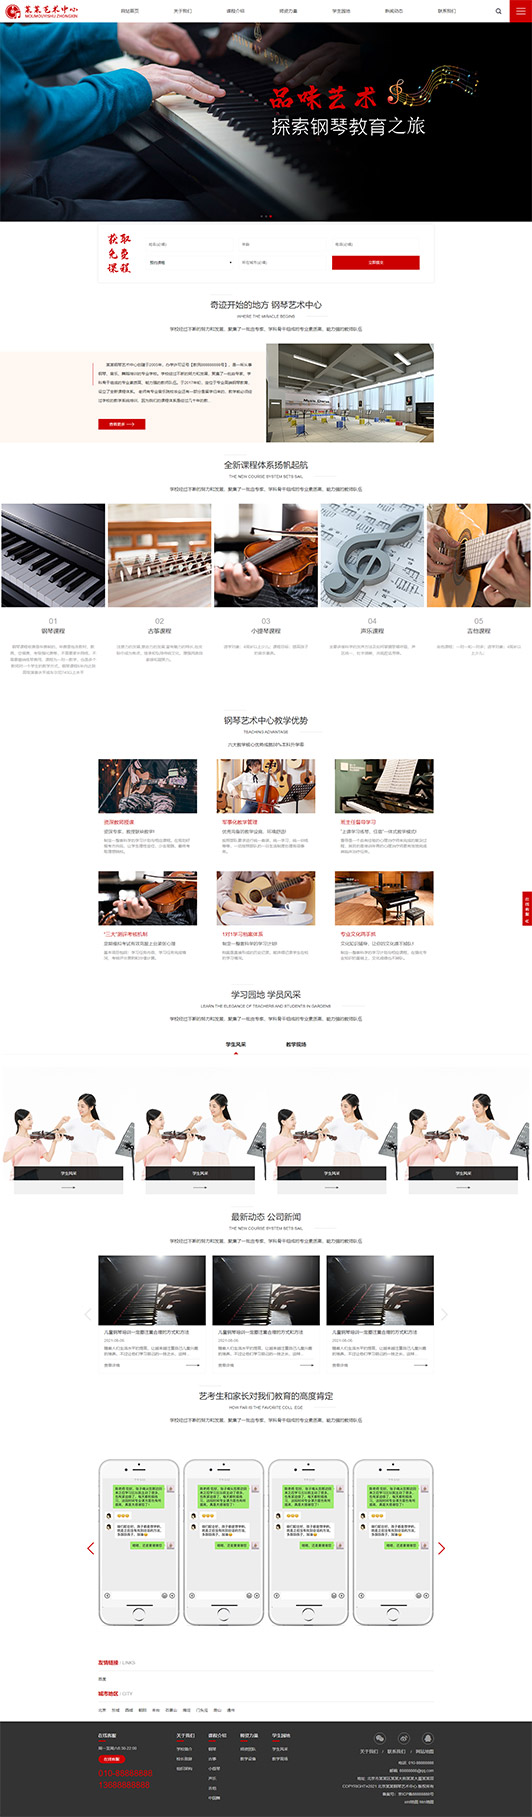 喀什钢琴艺术培训公司响应式企业网站